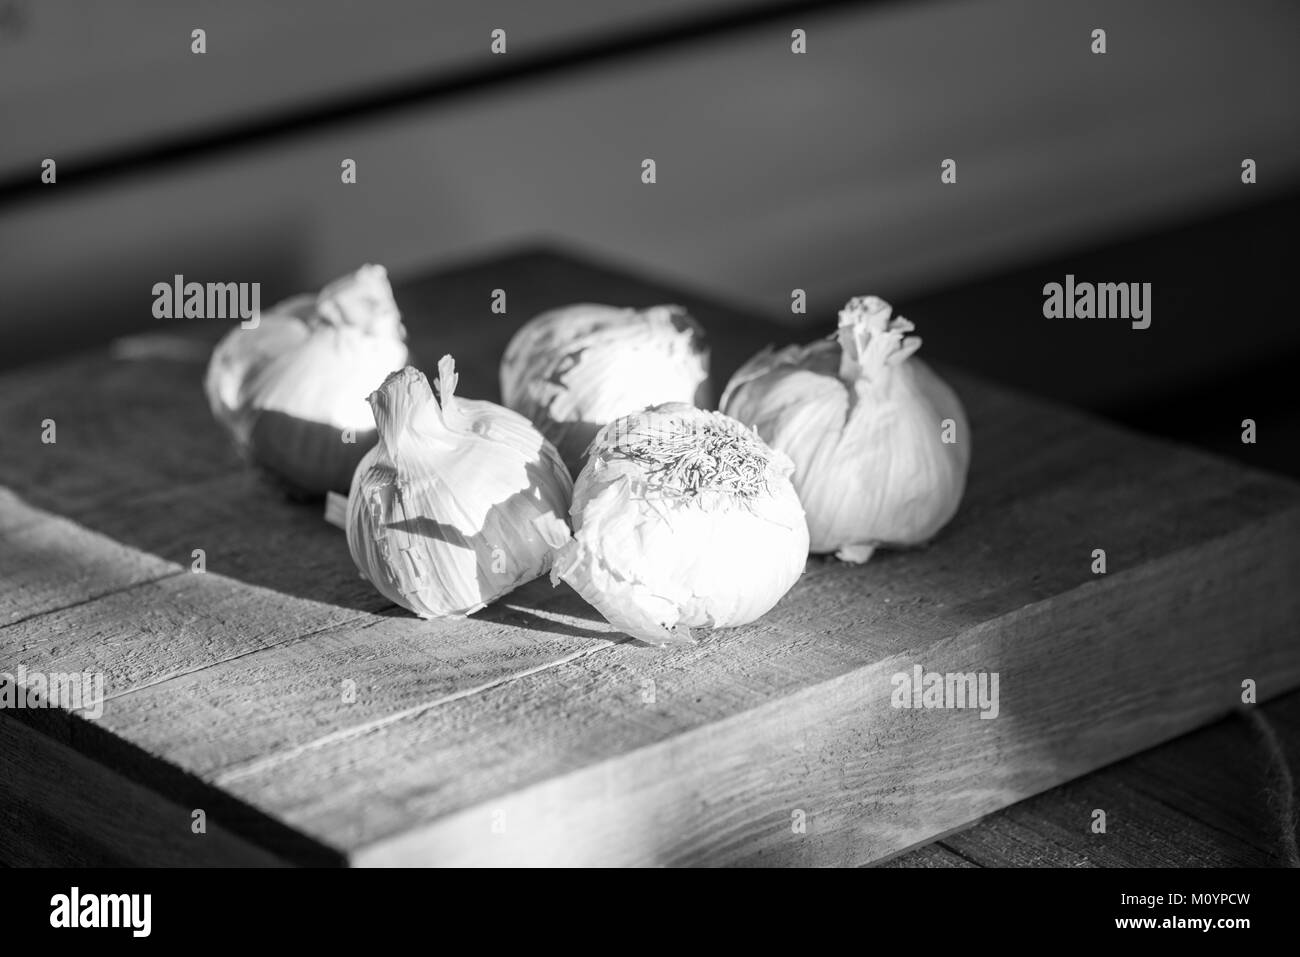 Schwarz-weiß Bild von mehreren Knoblauch Zwiebeln in Moody natürliche Beleuchtung auf einem Holzbrett Stockfoto